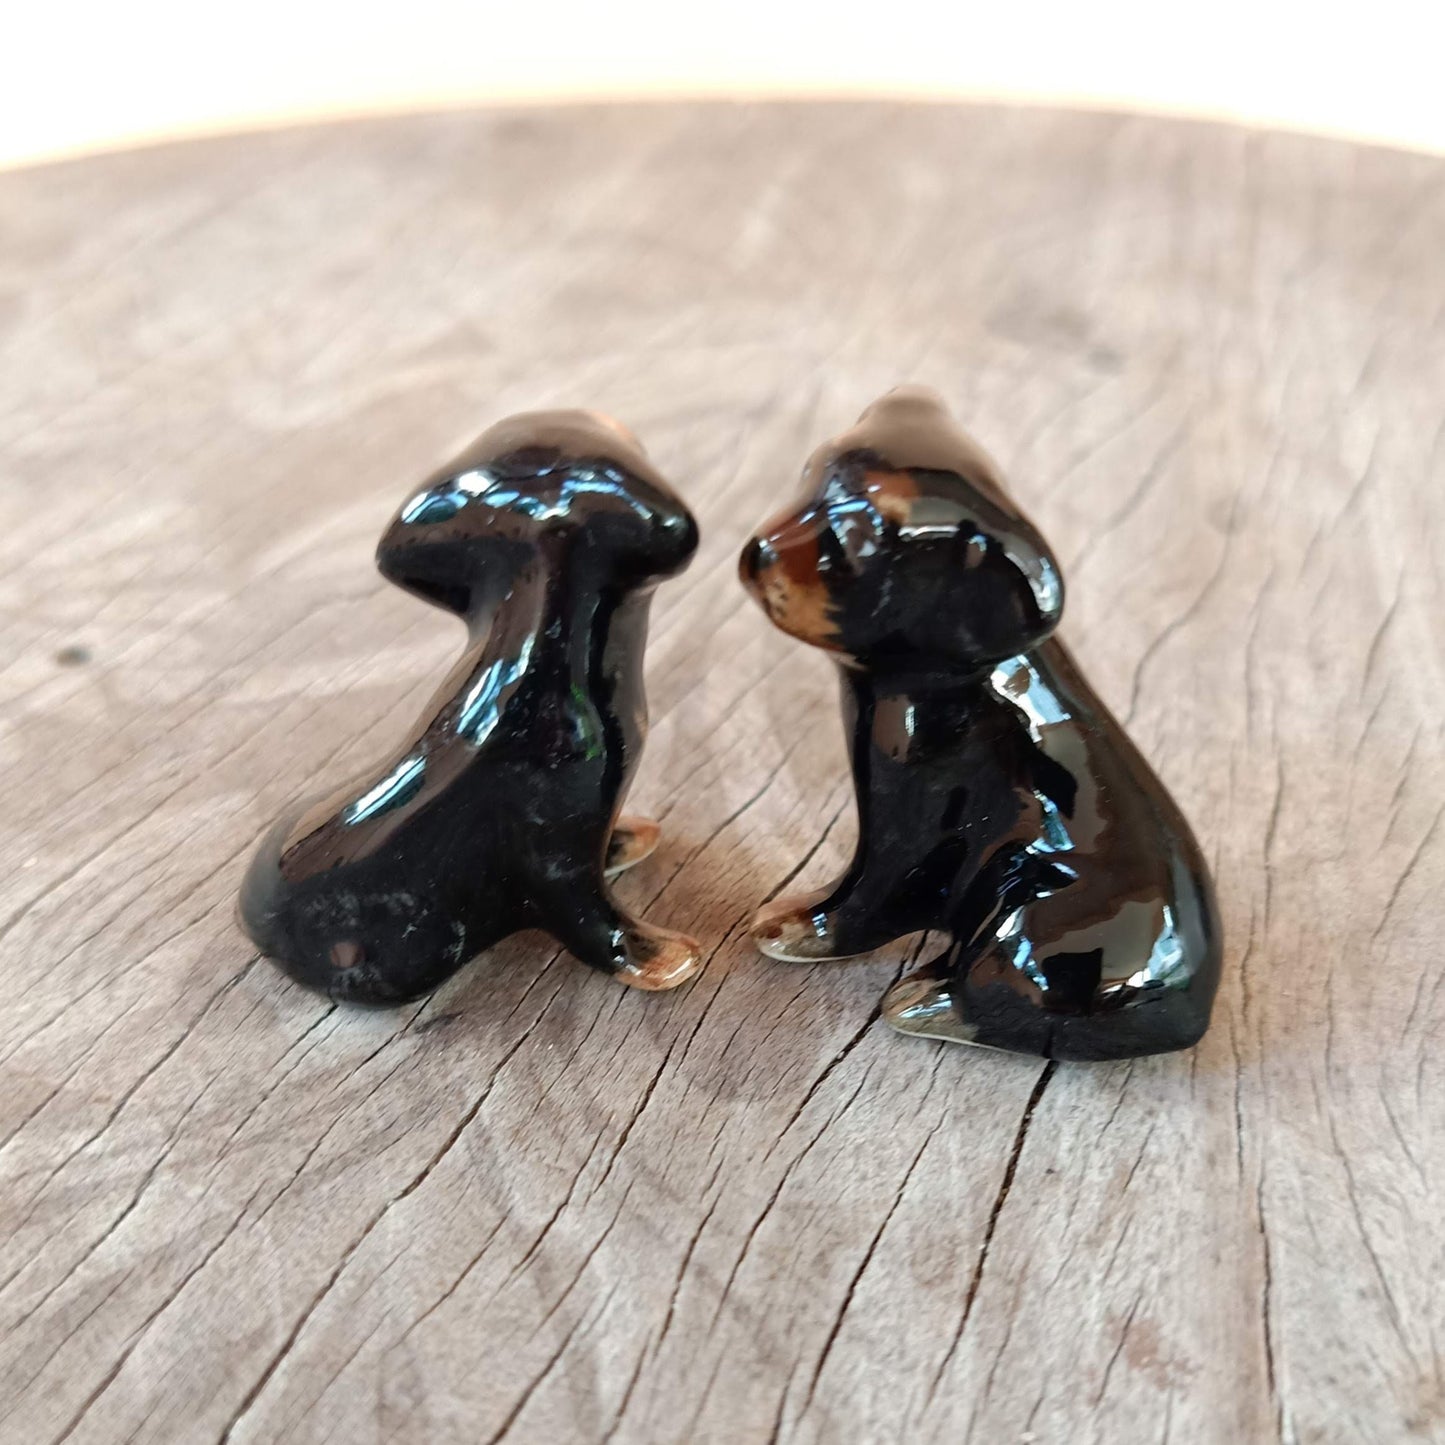 2 Black Dachshund Puppies